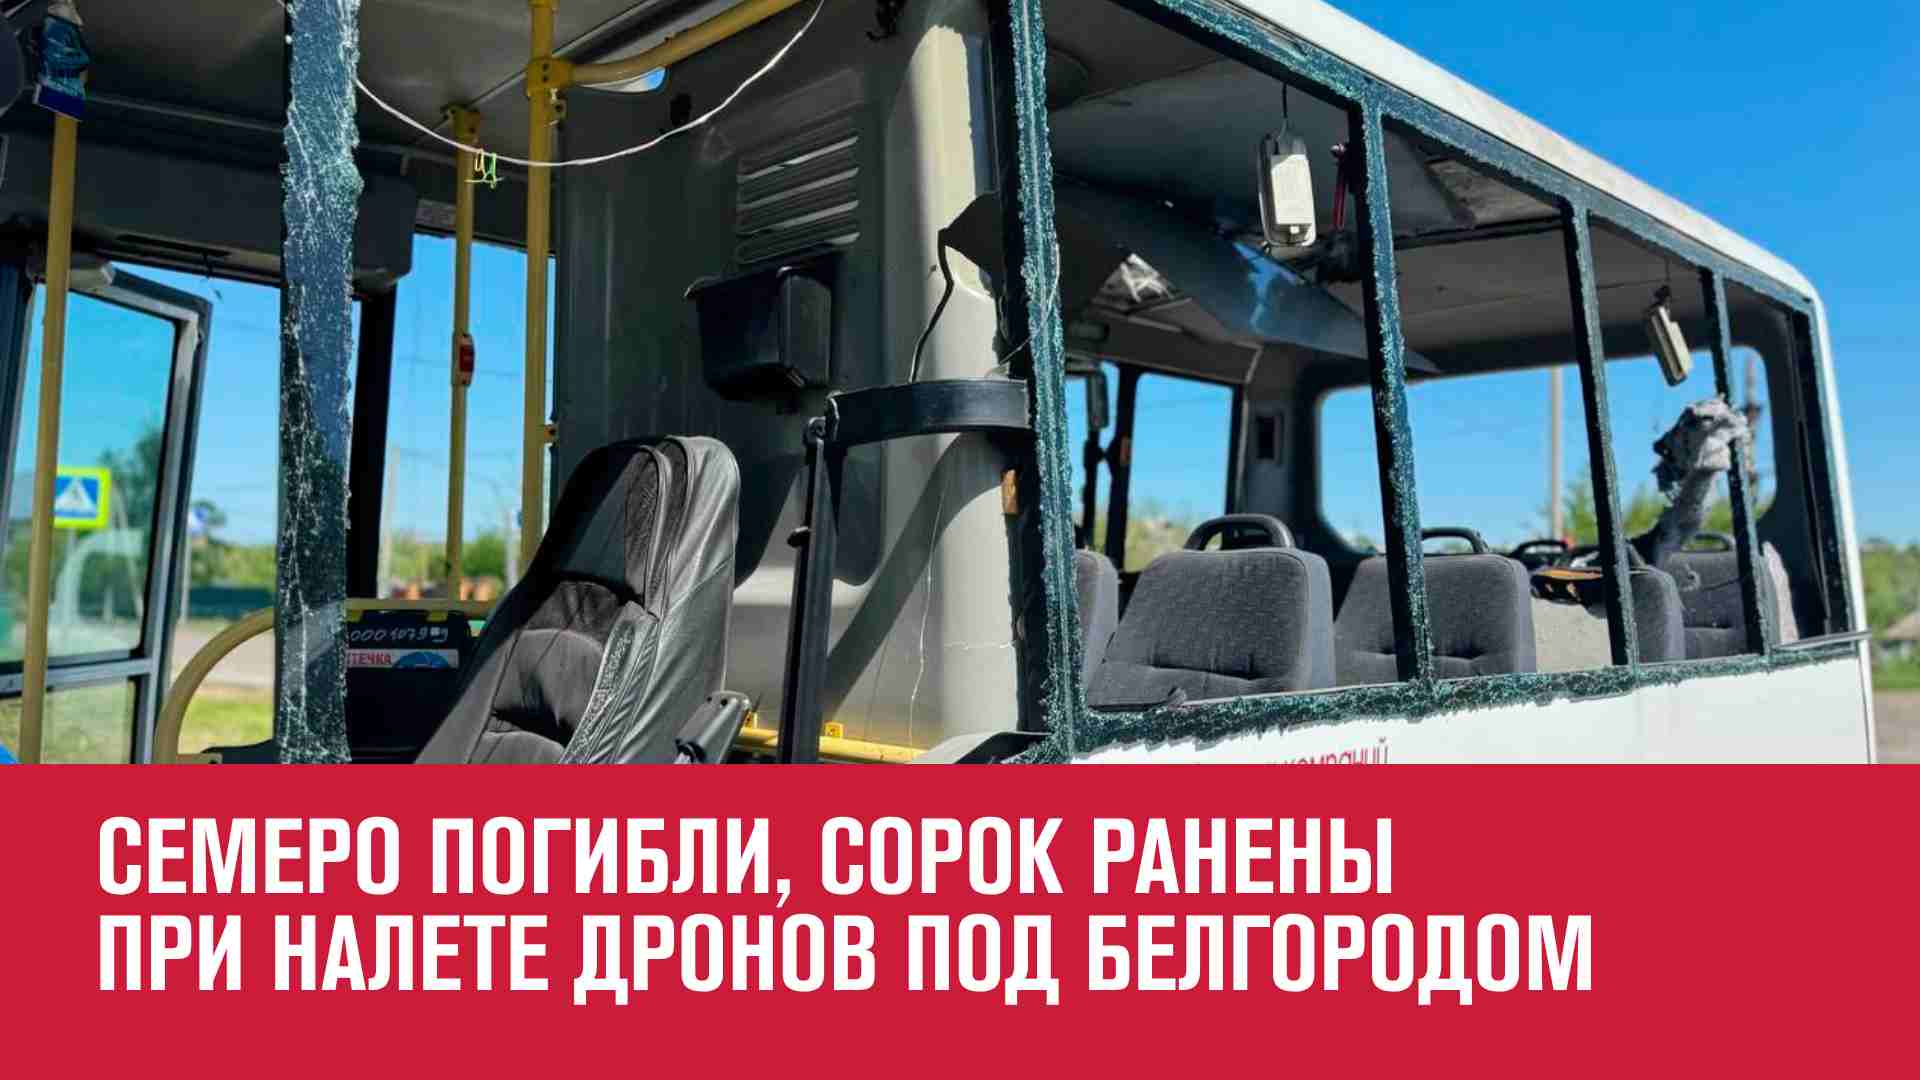 БПЛА атаковали автобусы с работниками агропредприятия в Белгородской области - Москва FM